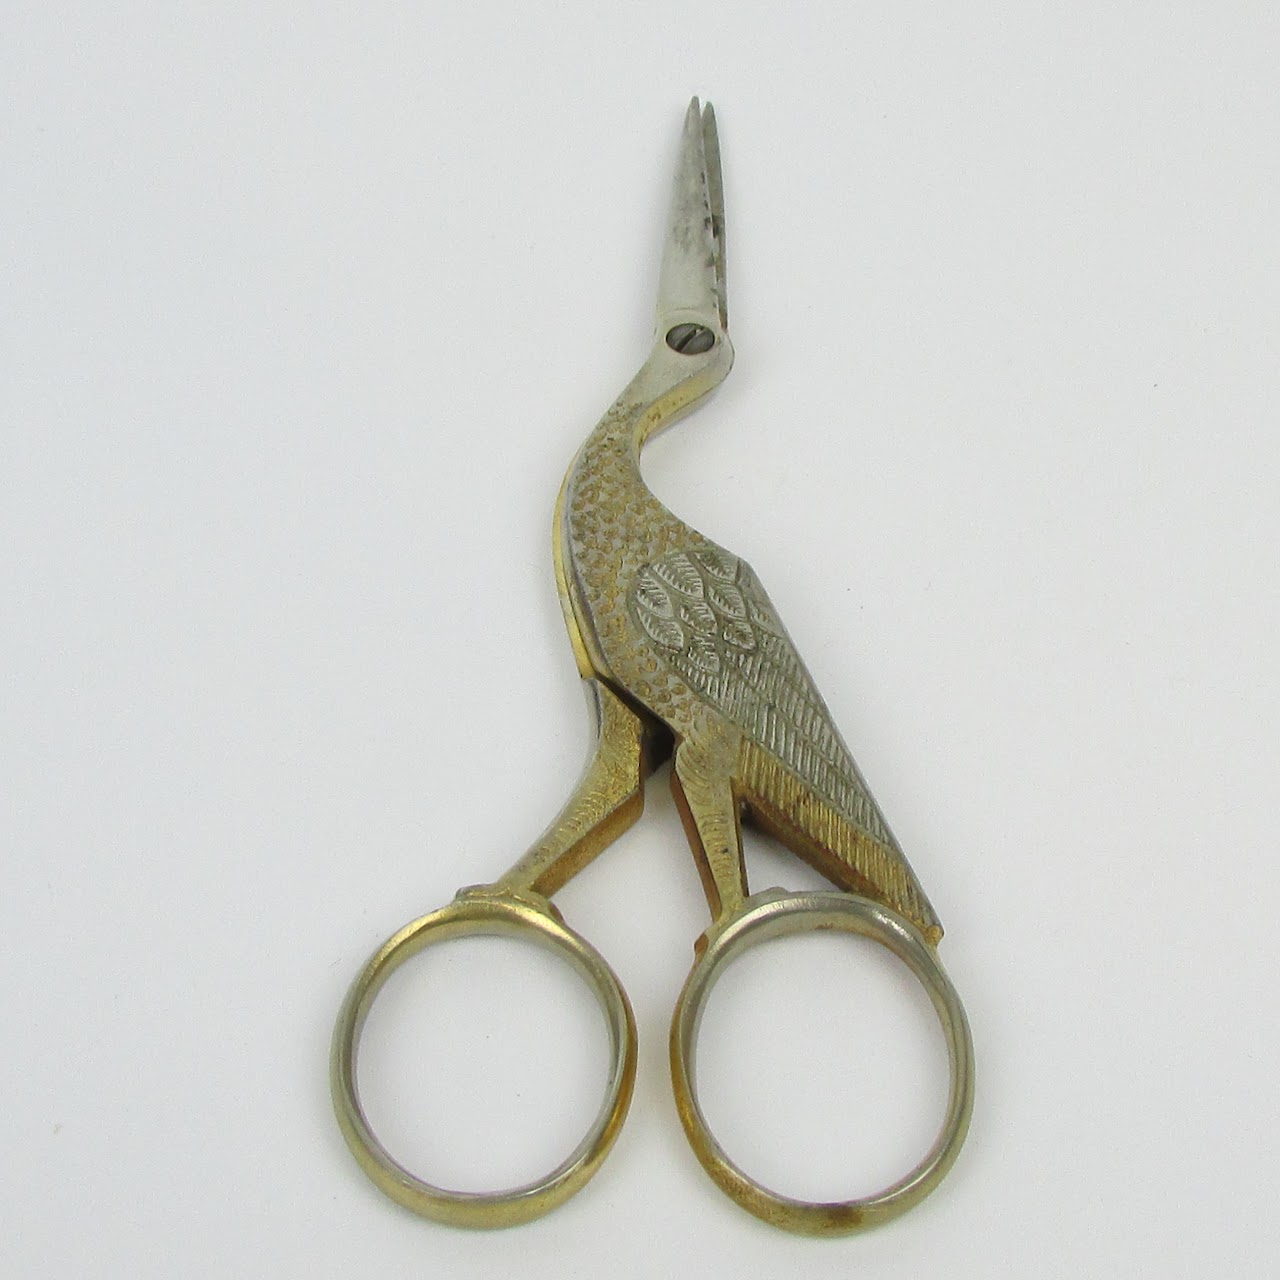 Gerresheim & Sohn Solingen Stork Embroidery Scissors